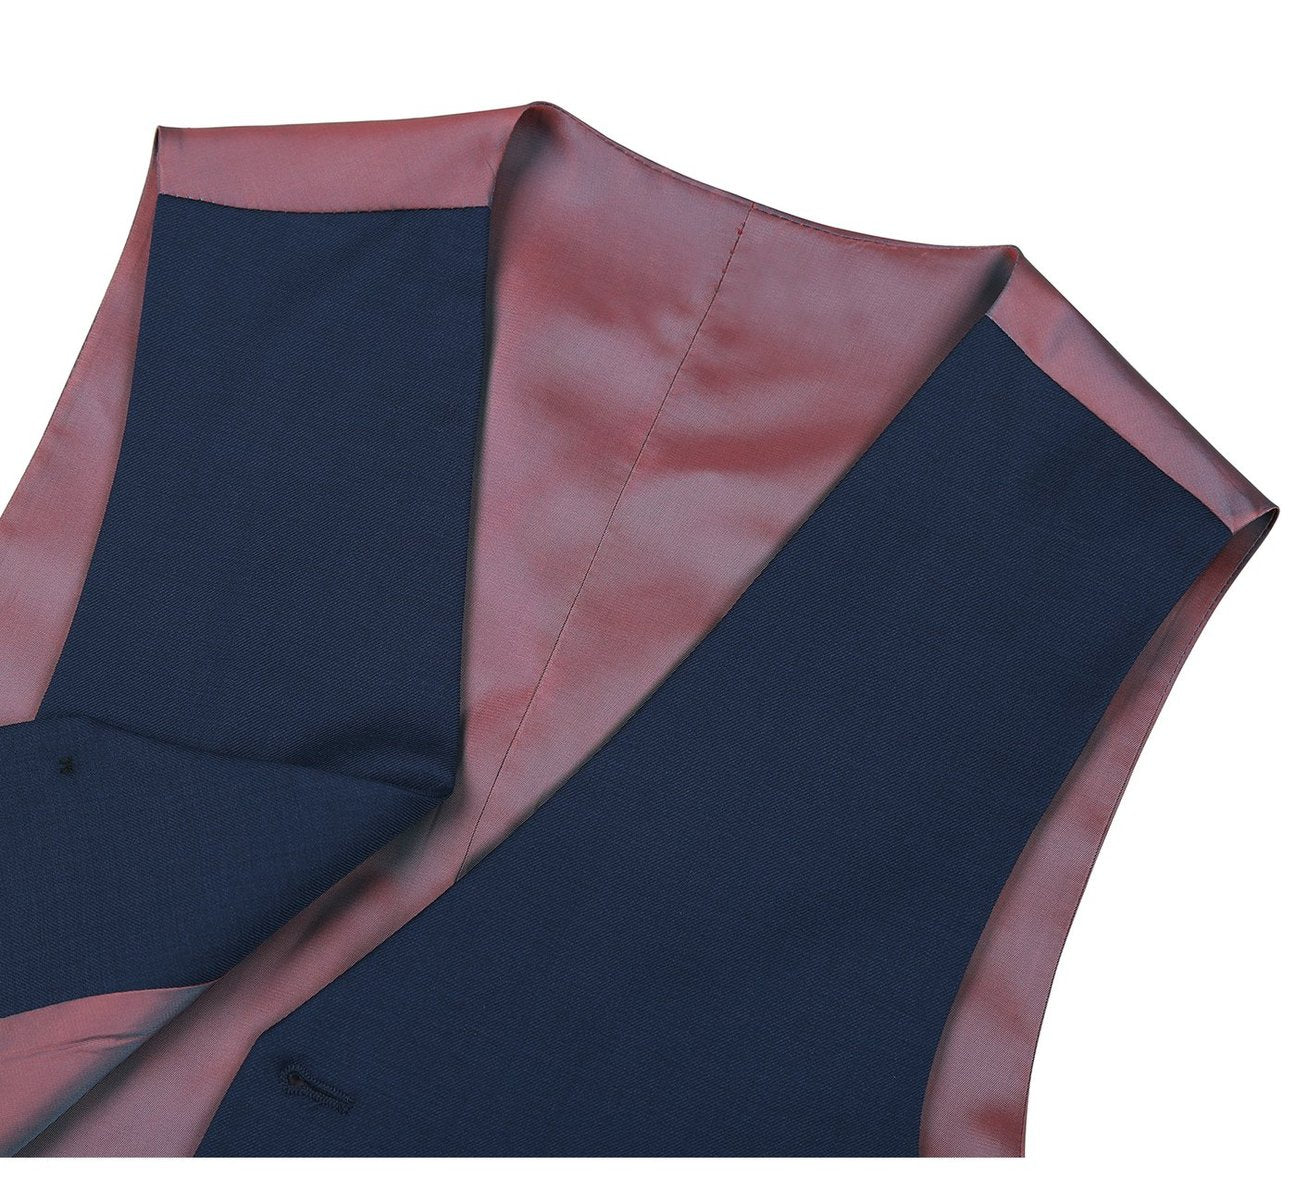 RENOIR Blue Wool Suit Vest Regular Fit Dress Suit Waistcoat 508-19